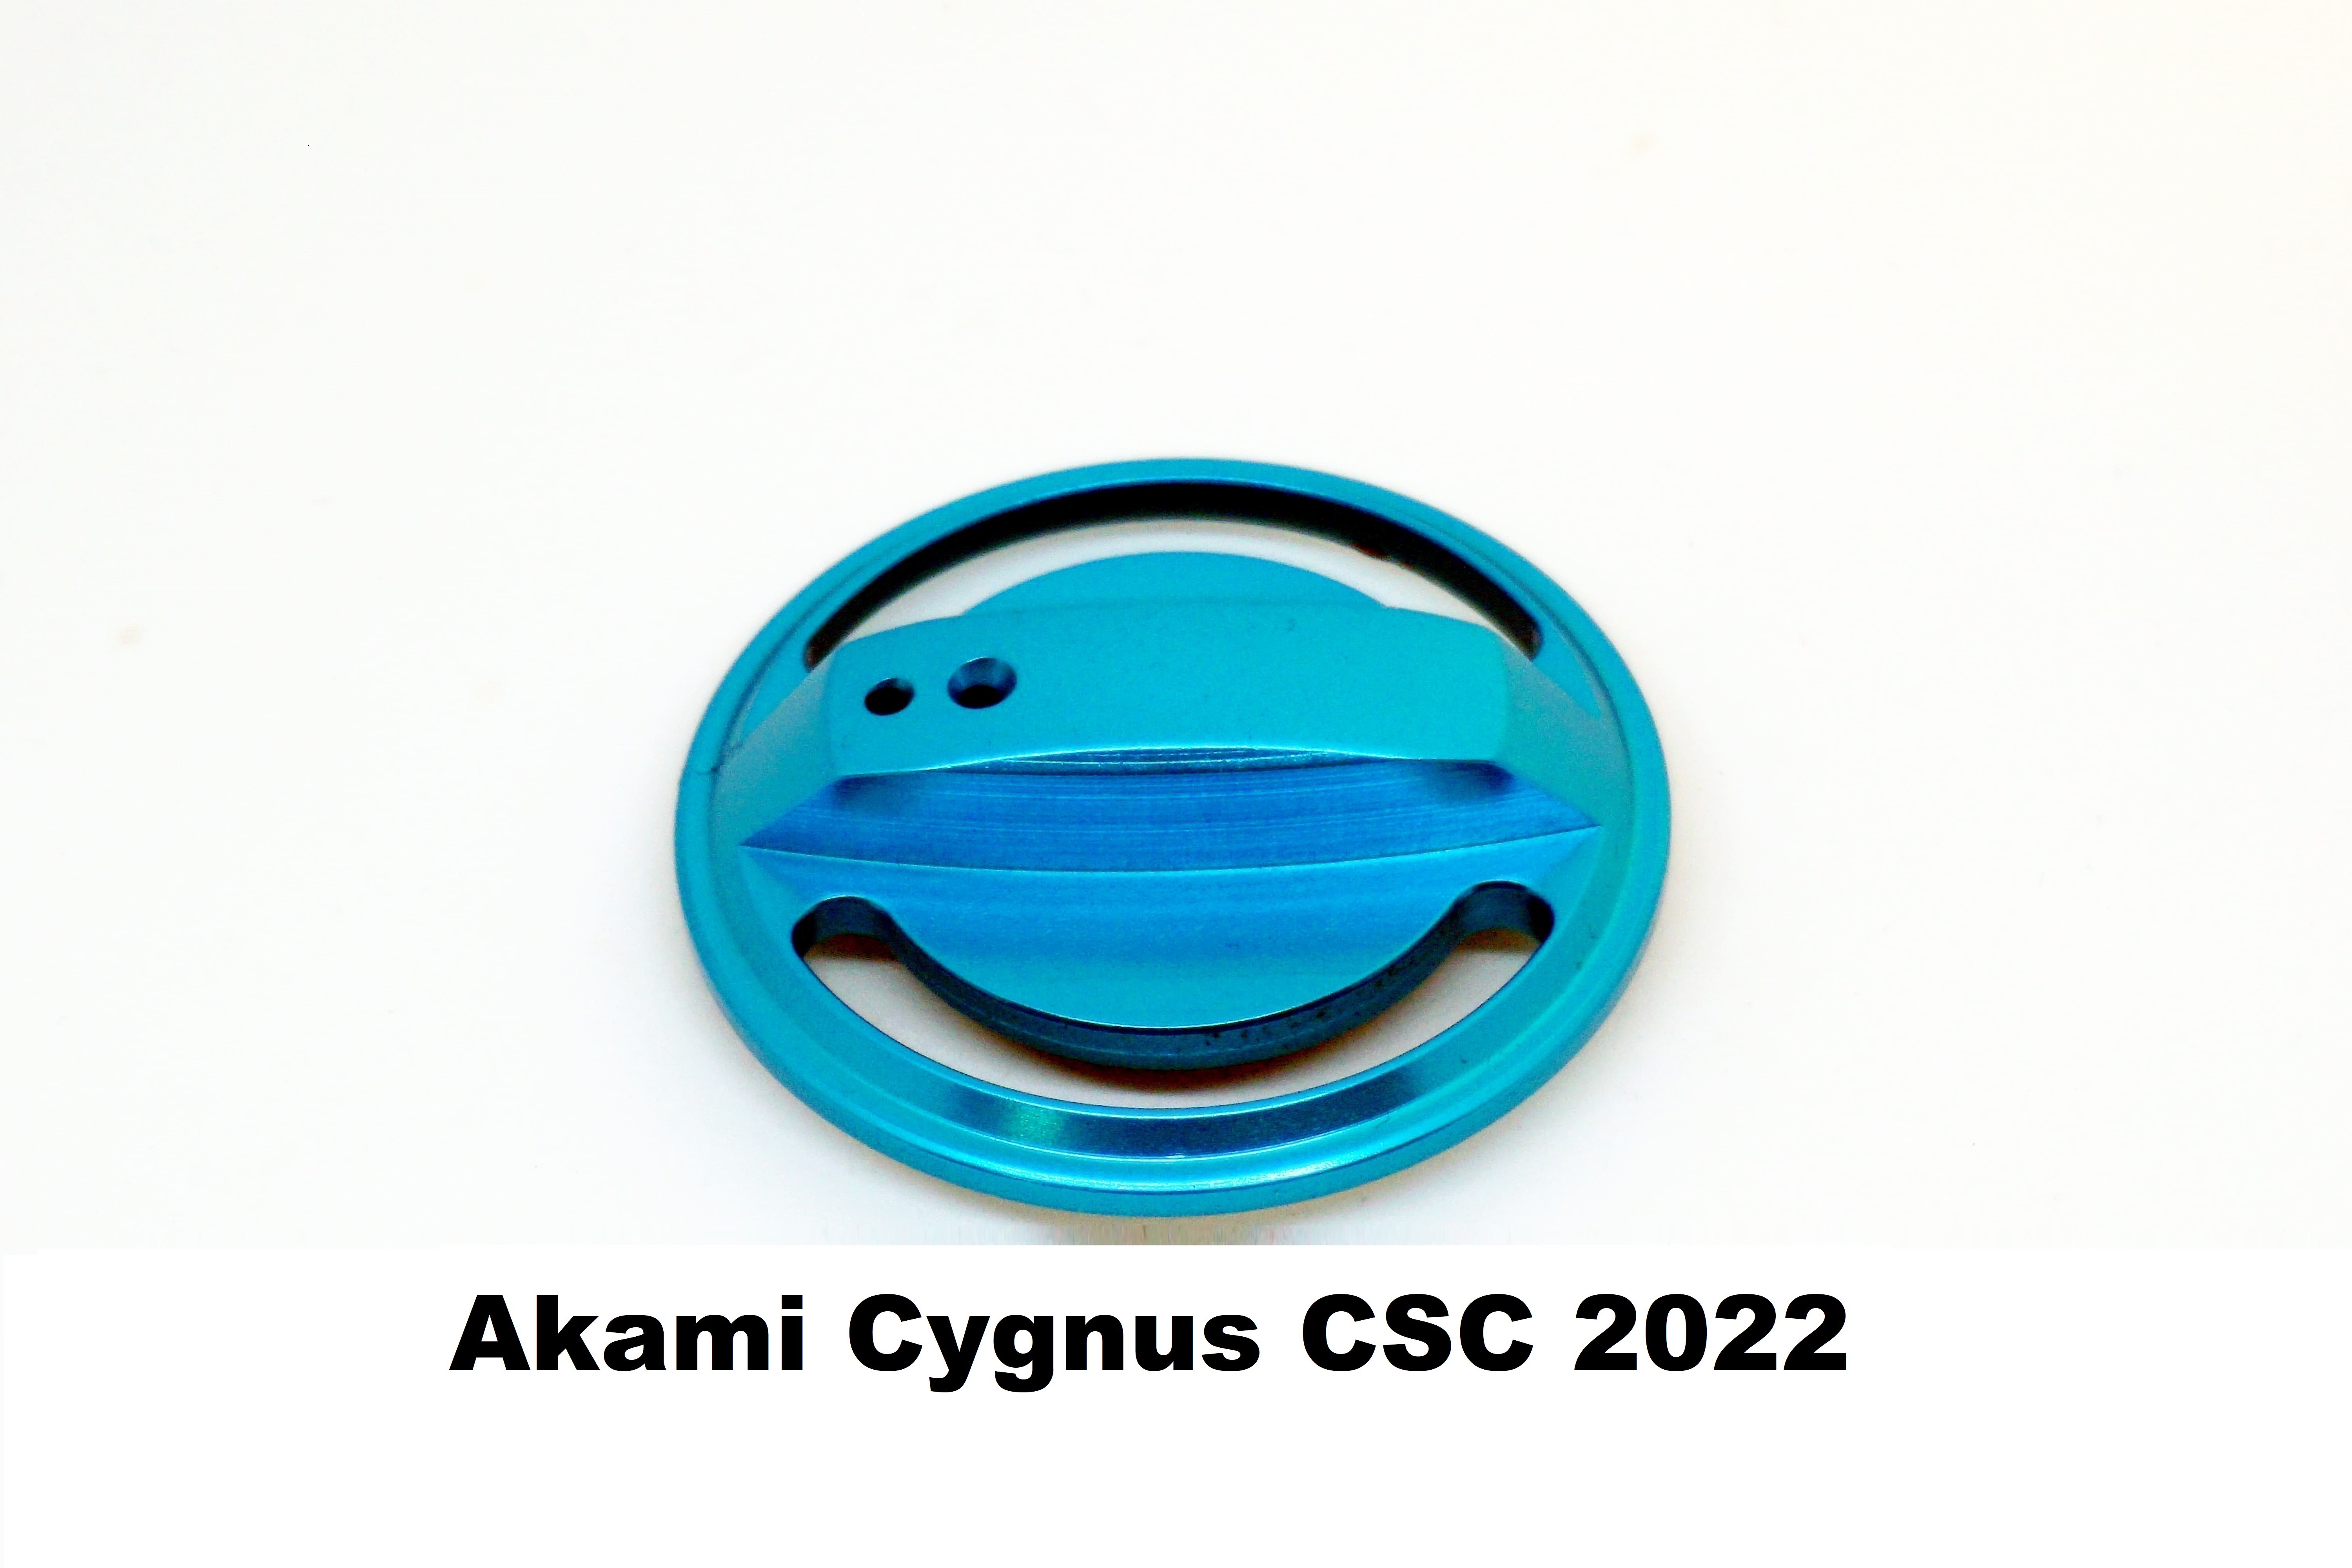 Bouchon de Fren Akami Cygnus CSC 2022